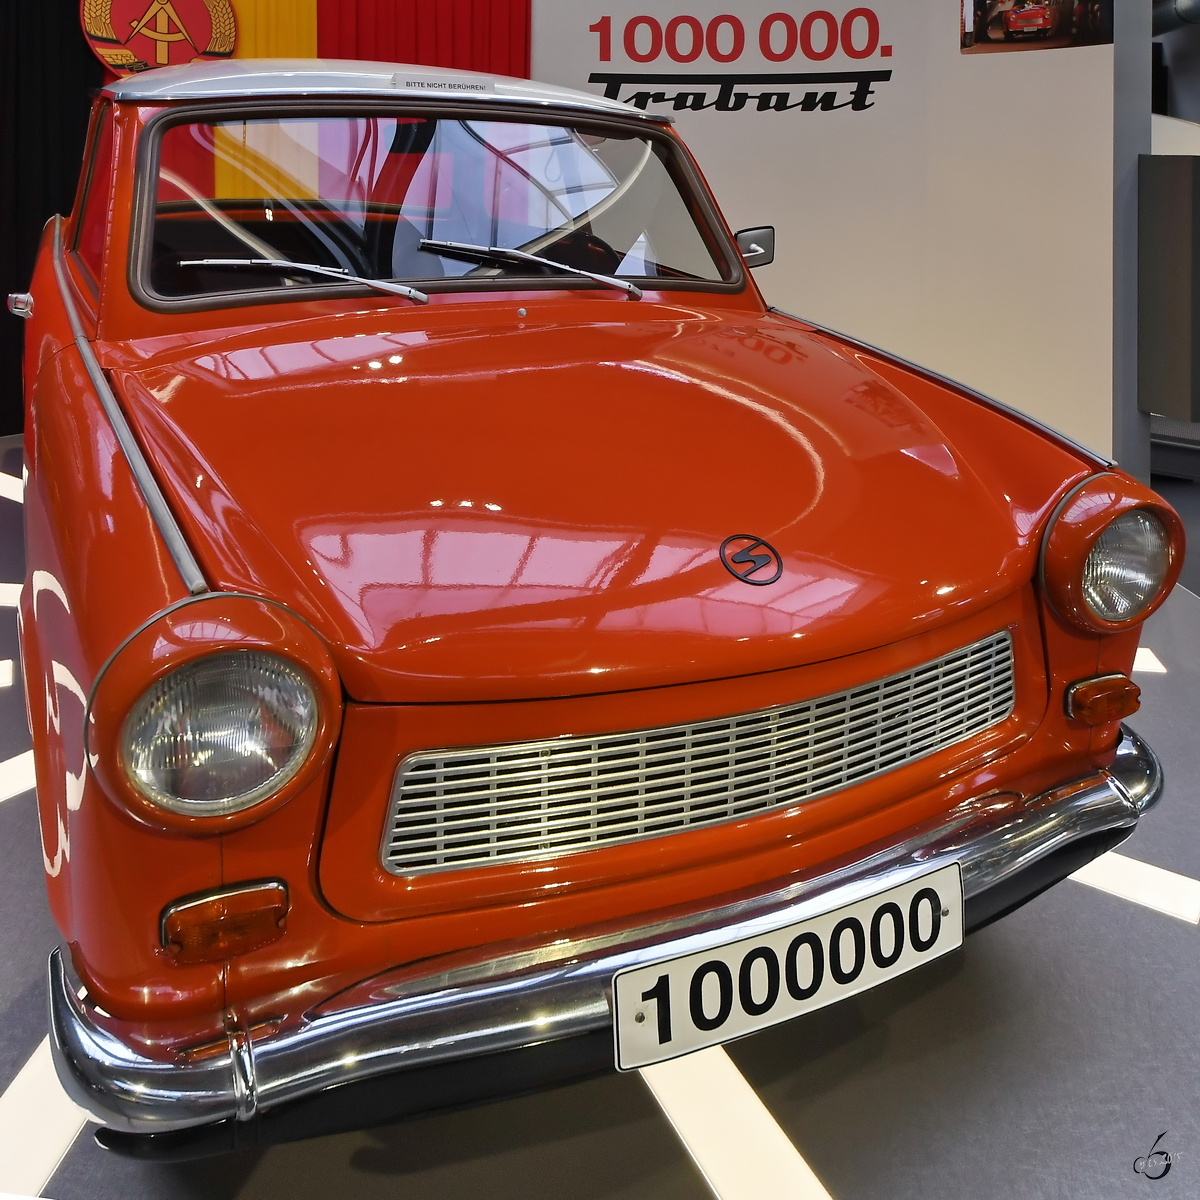 Der 1.000.000te Trabant im korrekten sozialistischen Rot. (August Horch Museum Zwickau, August 2018)